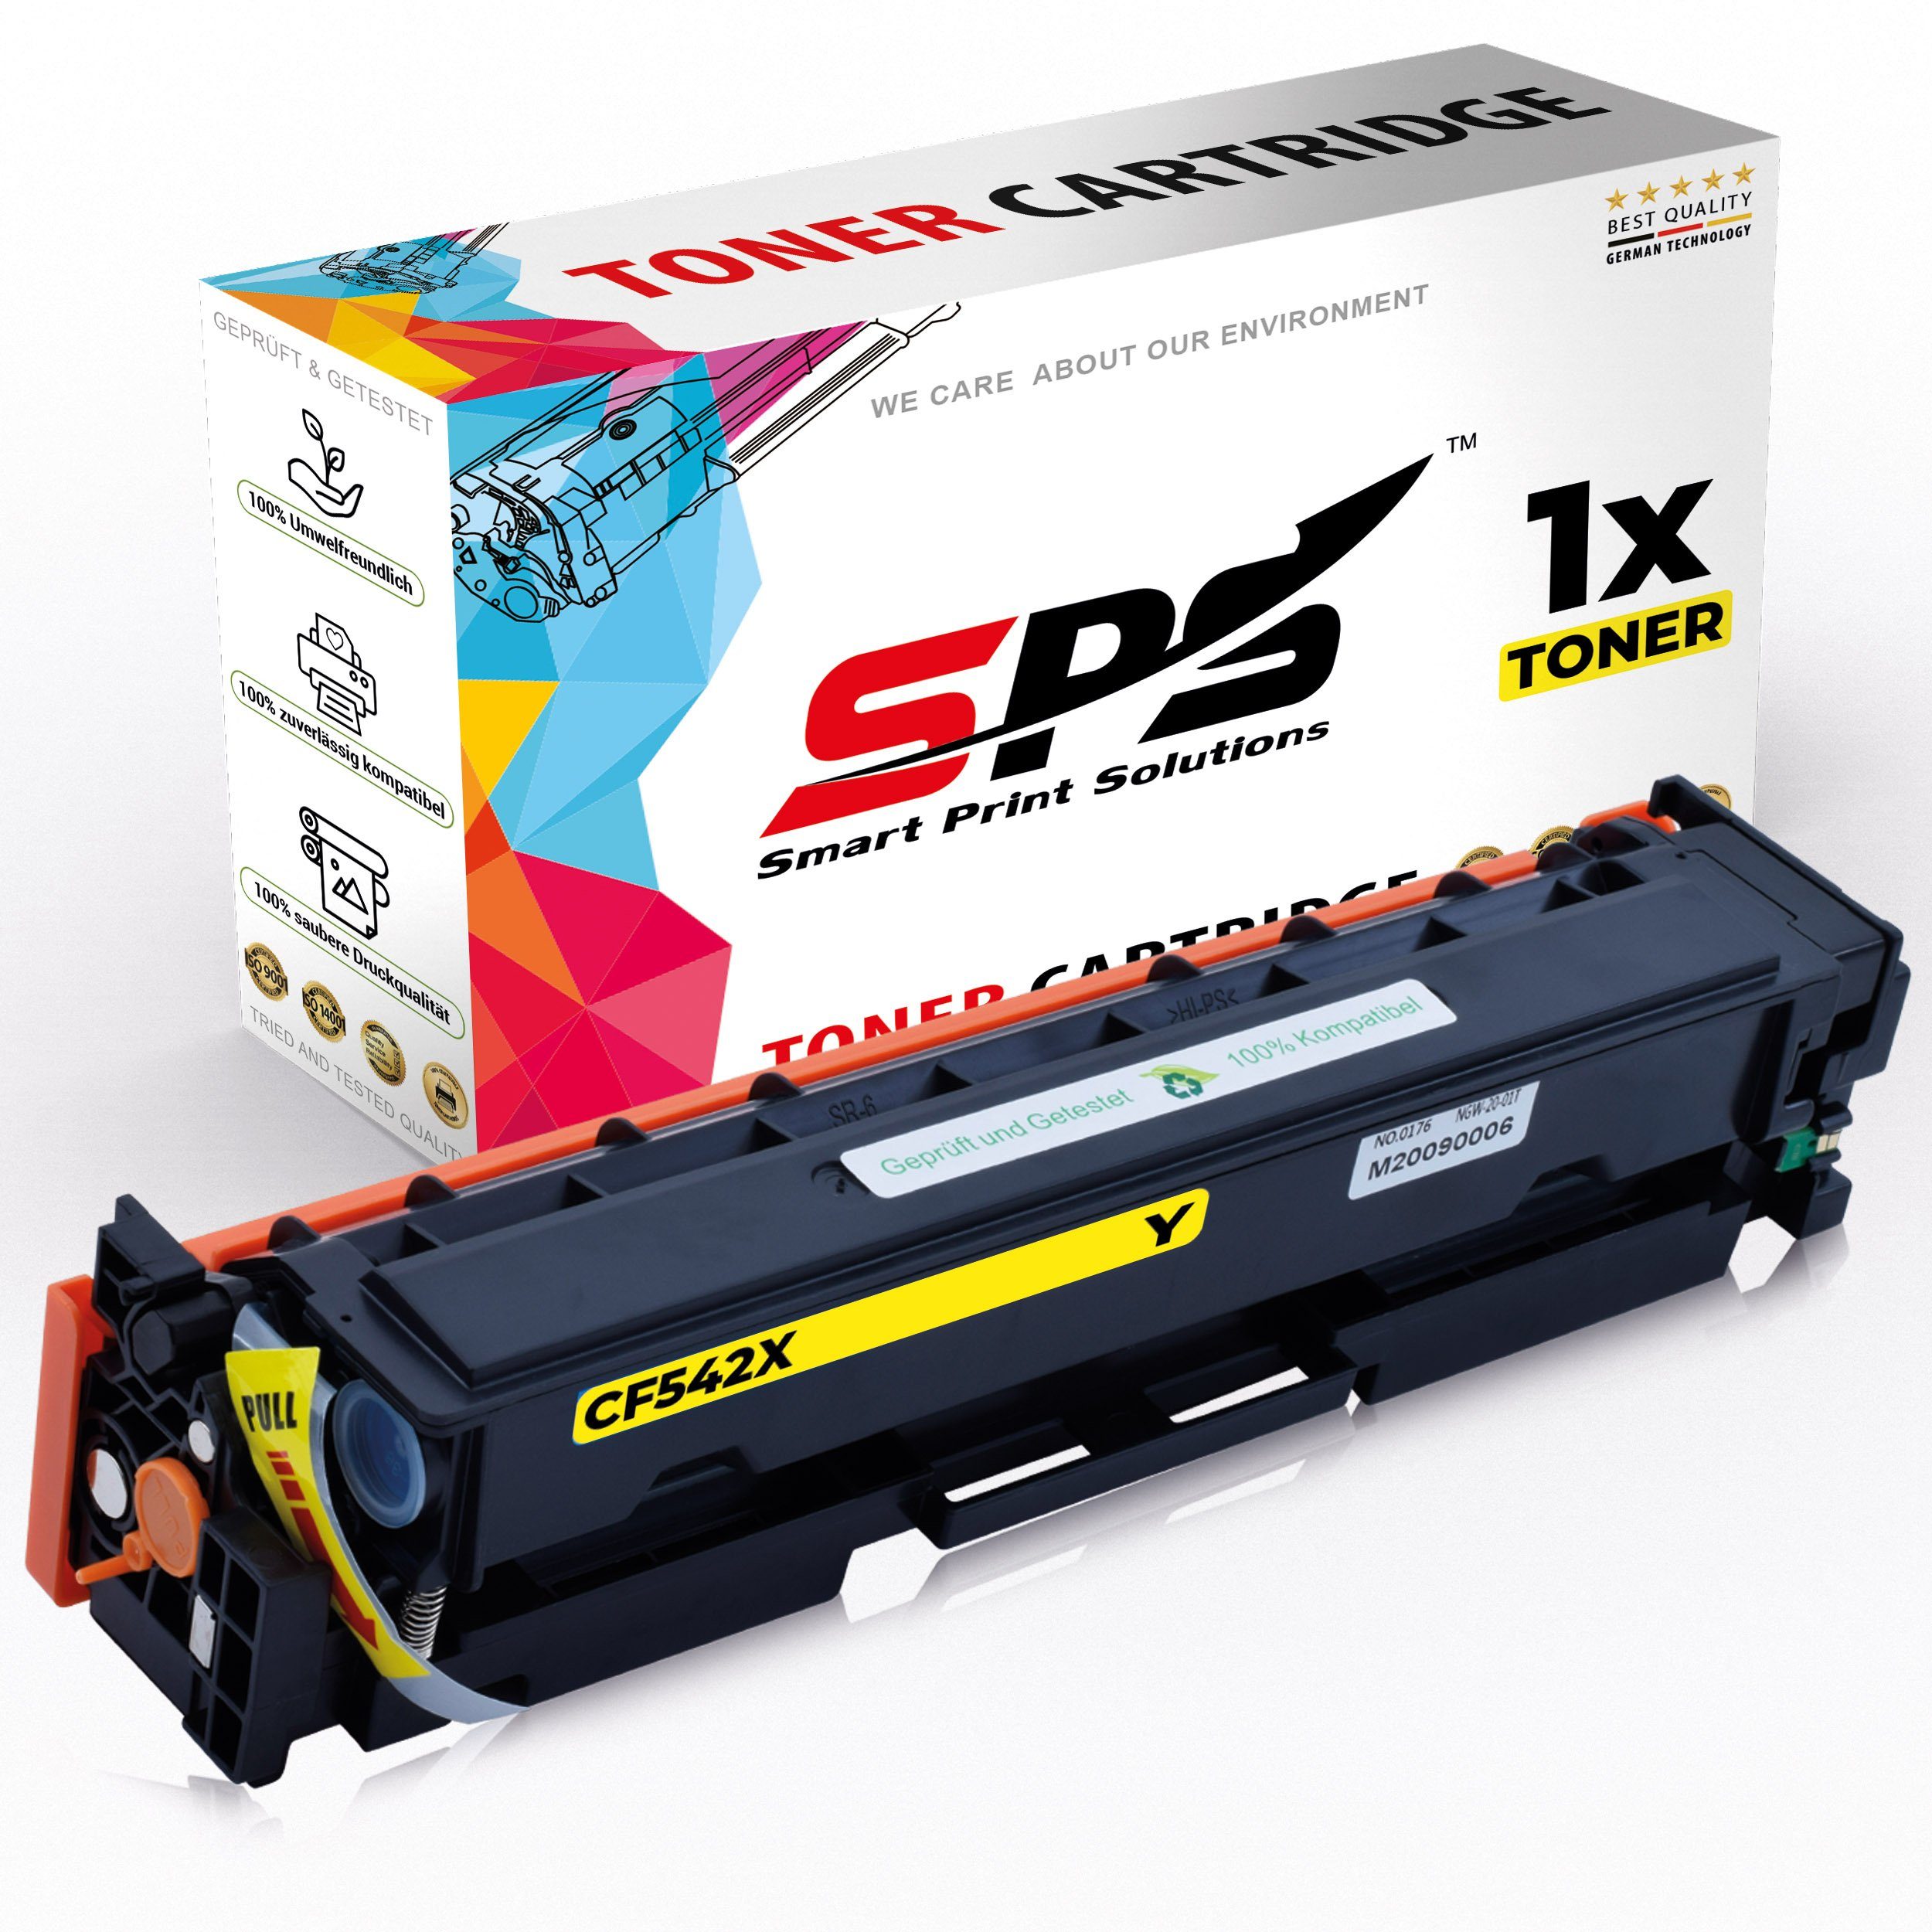 SPS Tonerkartusche Kompatibel für HP Color Laserjet Pro MFP M 280, (1er Pack, 1x Toner)